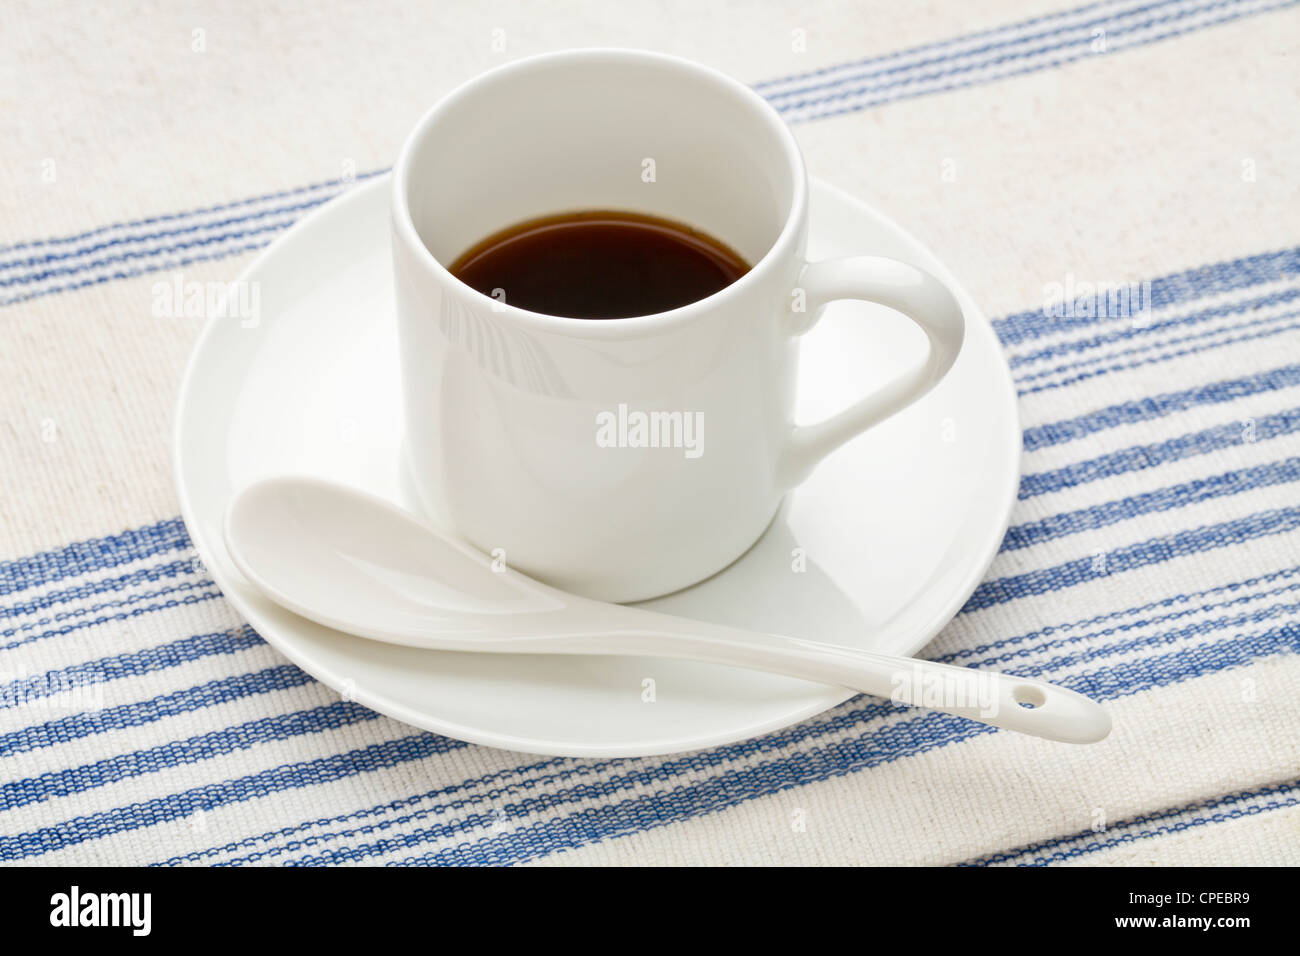 La porcelaine blanche tasse de café espresso avec une cuillère en céramique contre coton, nappe Banque D'Images